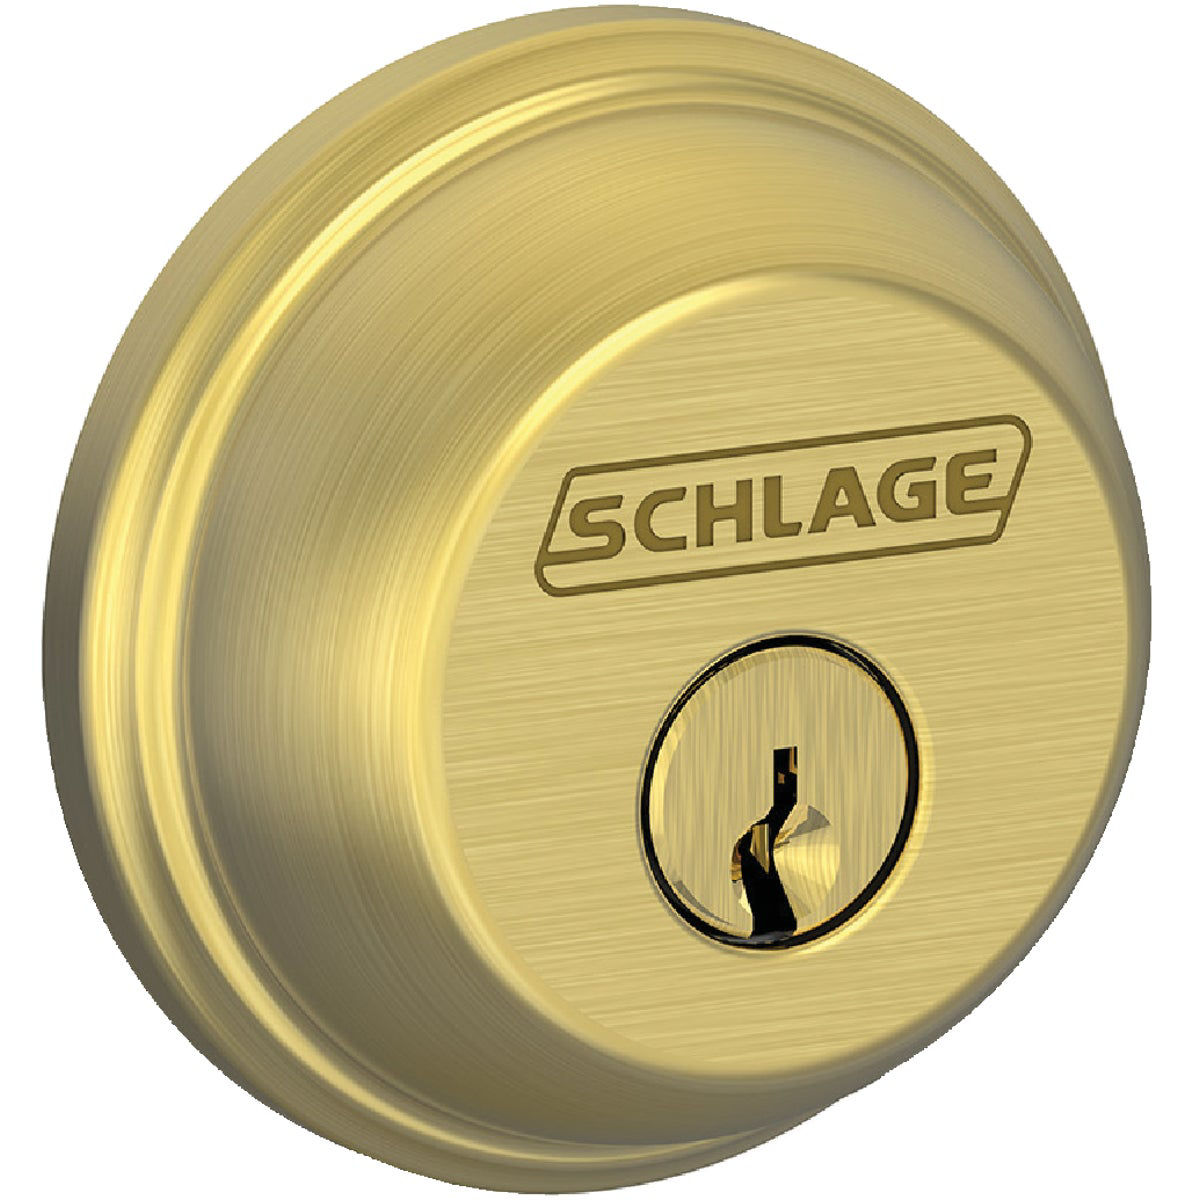 Schlage B Series Single Cylinder Deadbolt - Satin Brass